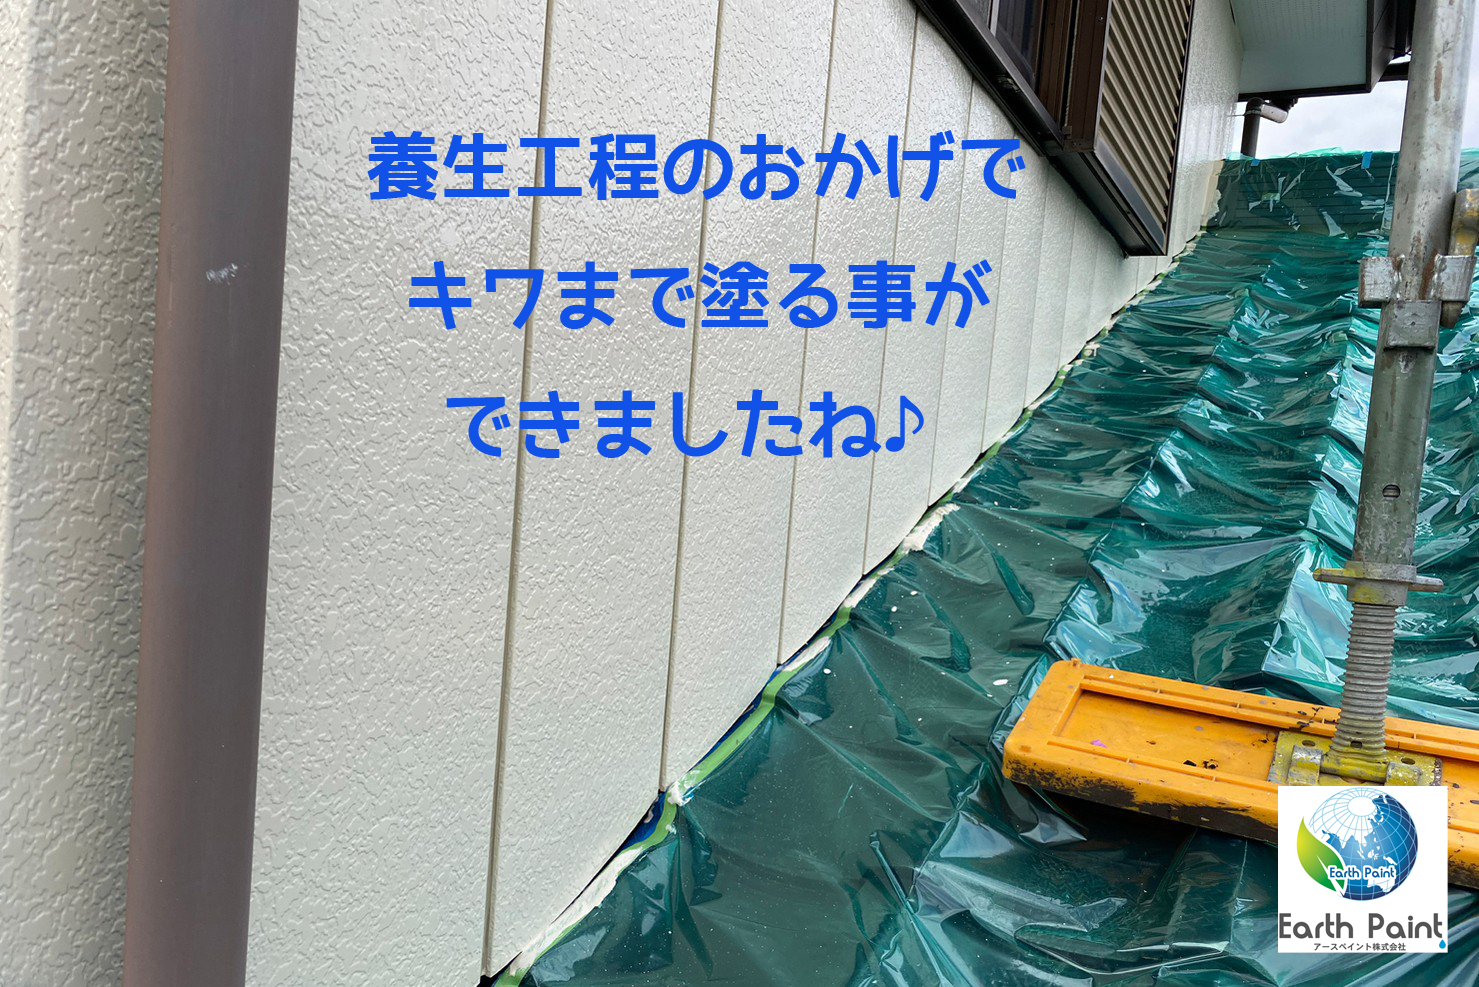 関口様邸(つくば)2F外壁中塗り_記事用2.jpg